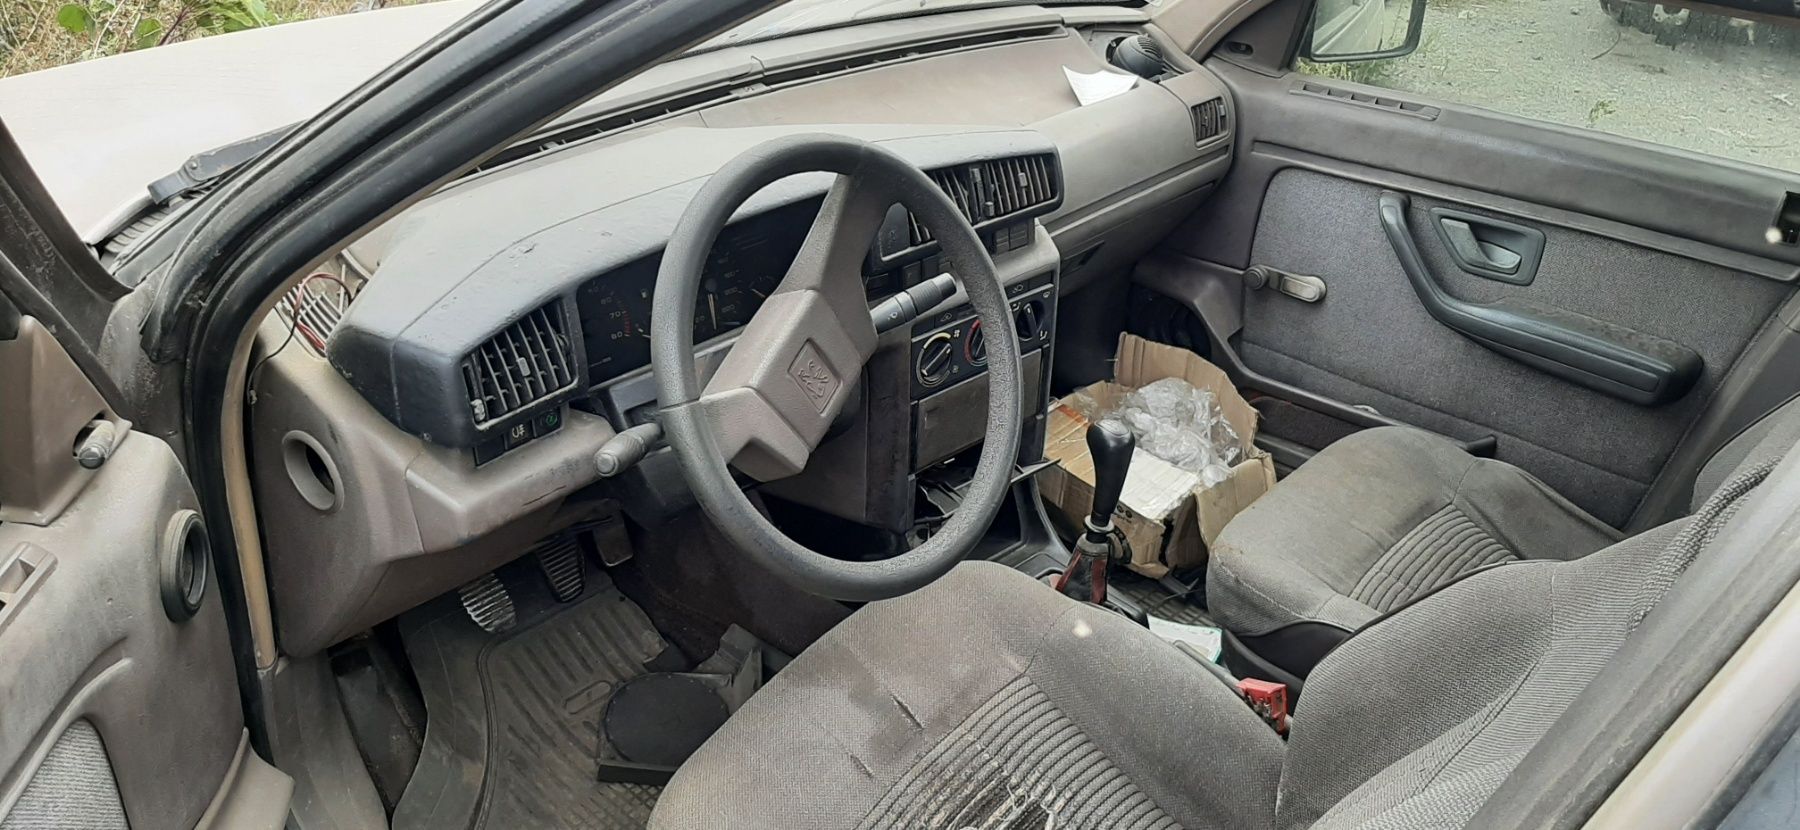 Peugeot 405 пежо 605 сидения сидушки карты ручки потолок кавер пластик